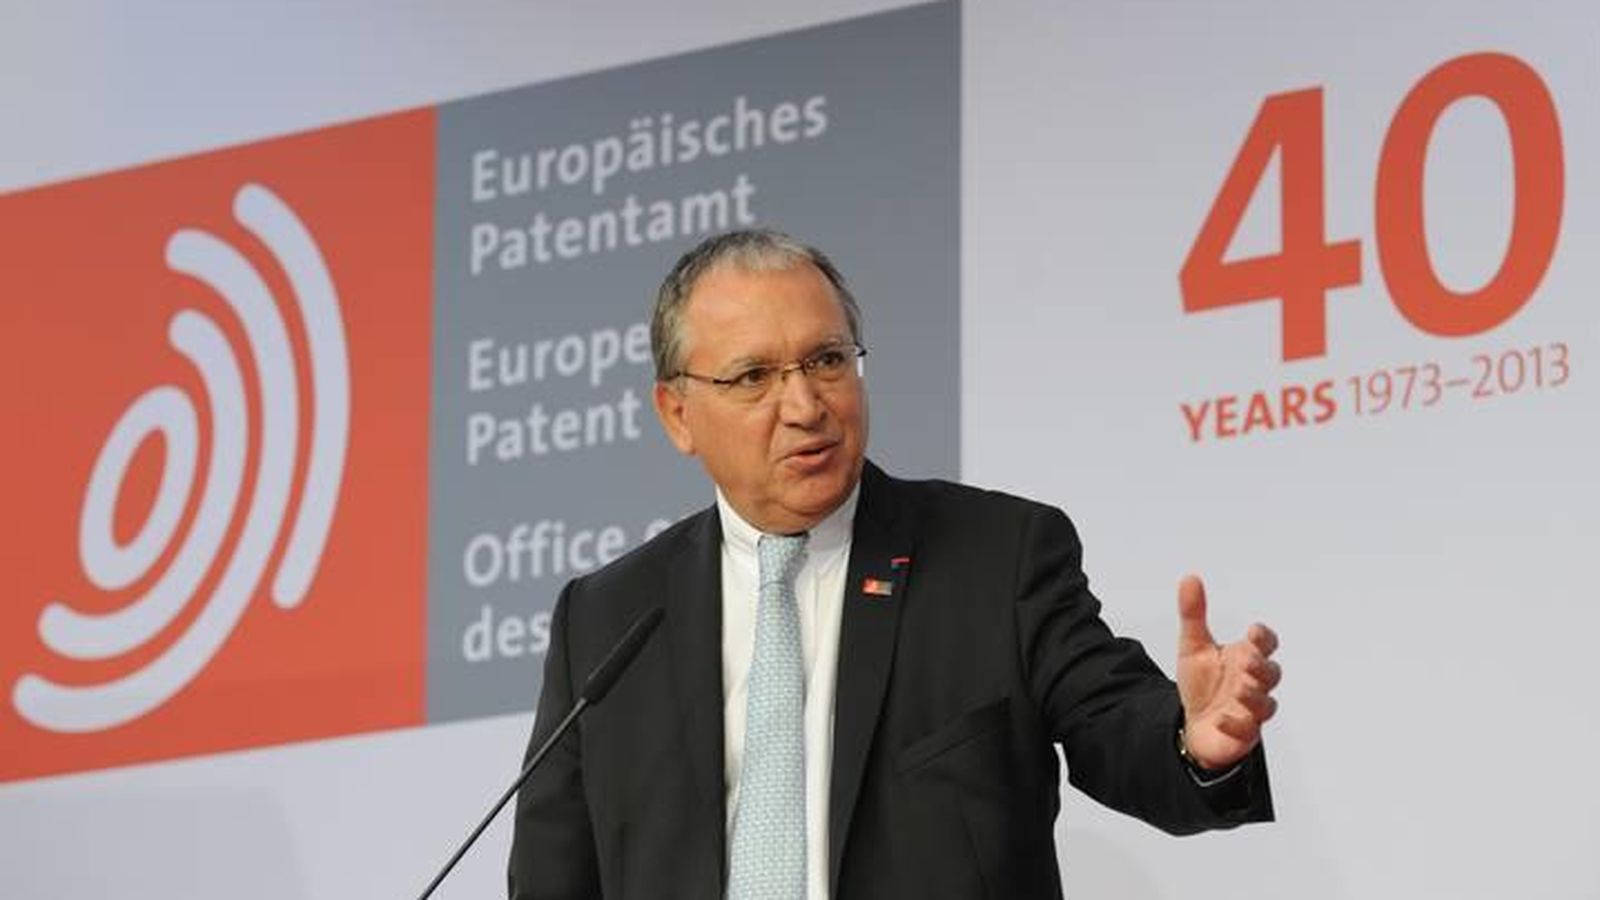 Foto: Benoît Battistelli, presidente de la Oficina Europea de Patentes. (EFE)